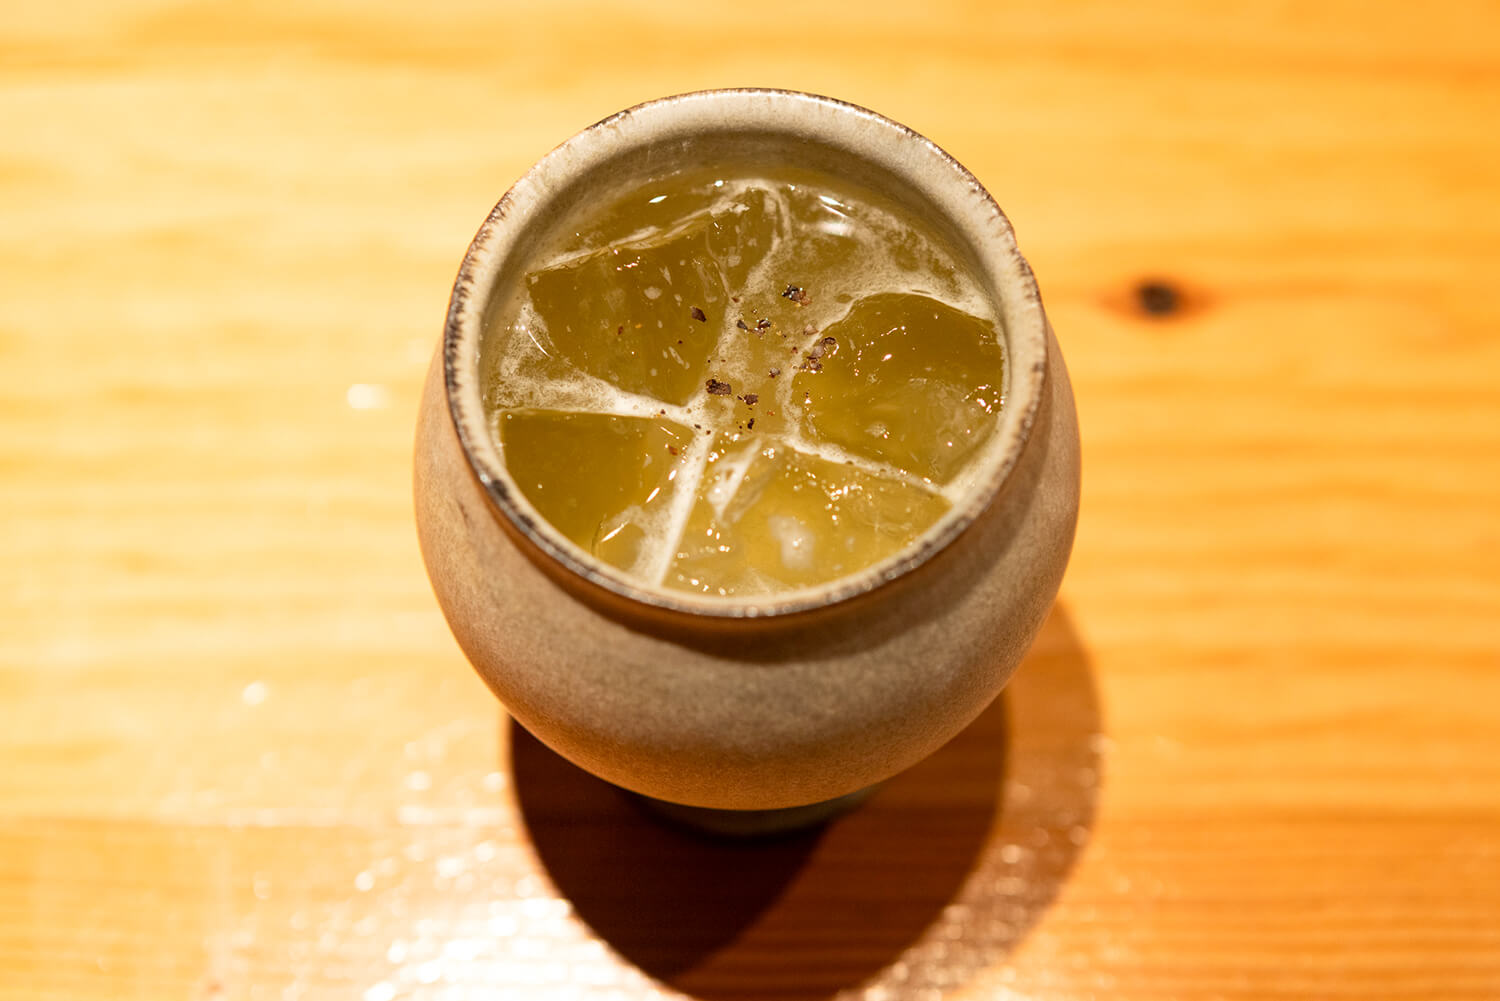 ジンベースの爽やかなカクテル「夜香木」1,600円。仕上げに台湾の香辛料マーガオで柑橘の香りを添える